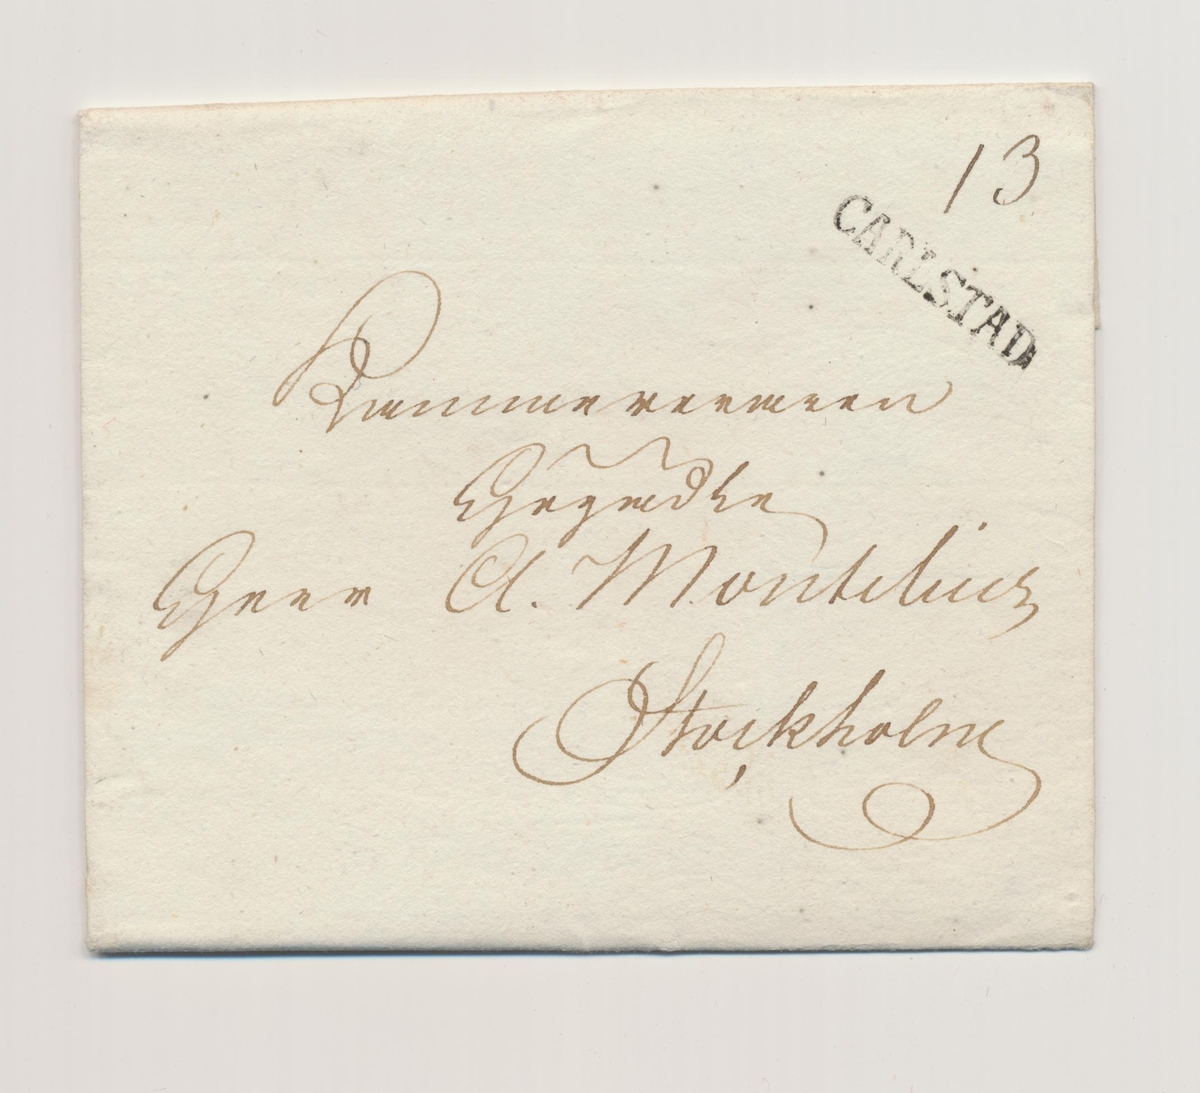 Brev med Karlstads rakstämpel skickat till kamreraren Montelius i Stockholm. Rakstämplar infördes vid alla svenska postkontor 1819.